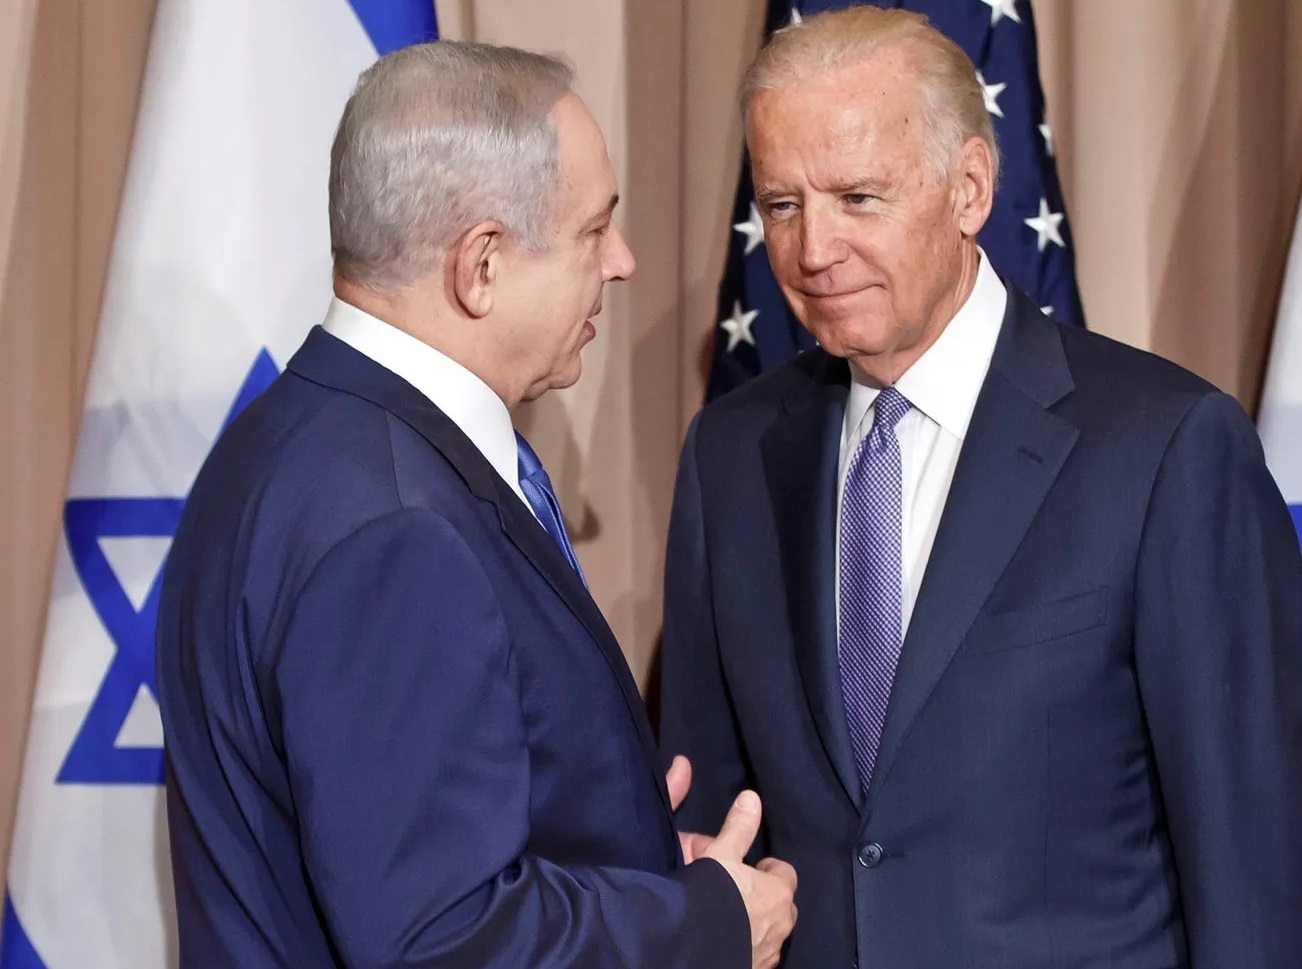 چرا اسرائیل در بحث افزایش تنش با ایران فعلا خیالش از طرف آمریکا راحت است؟